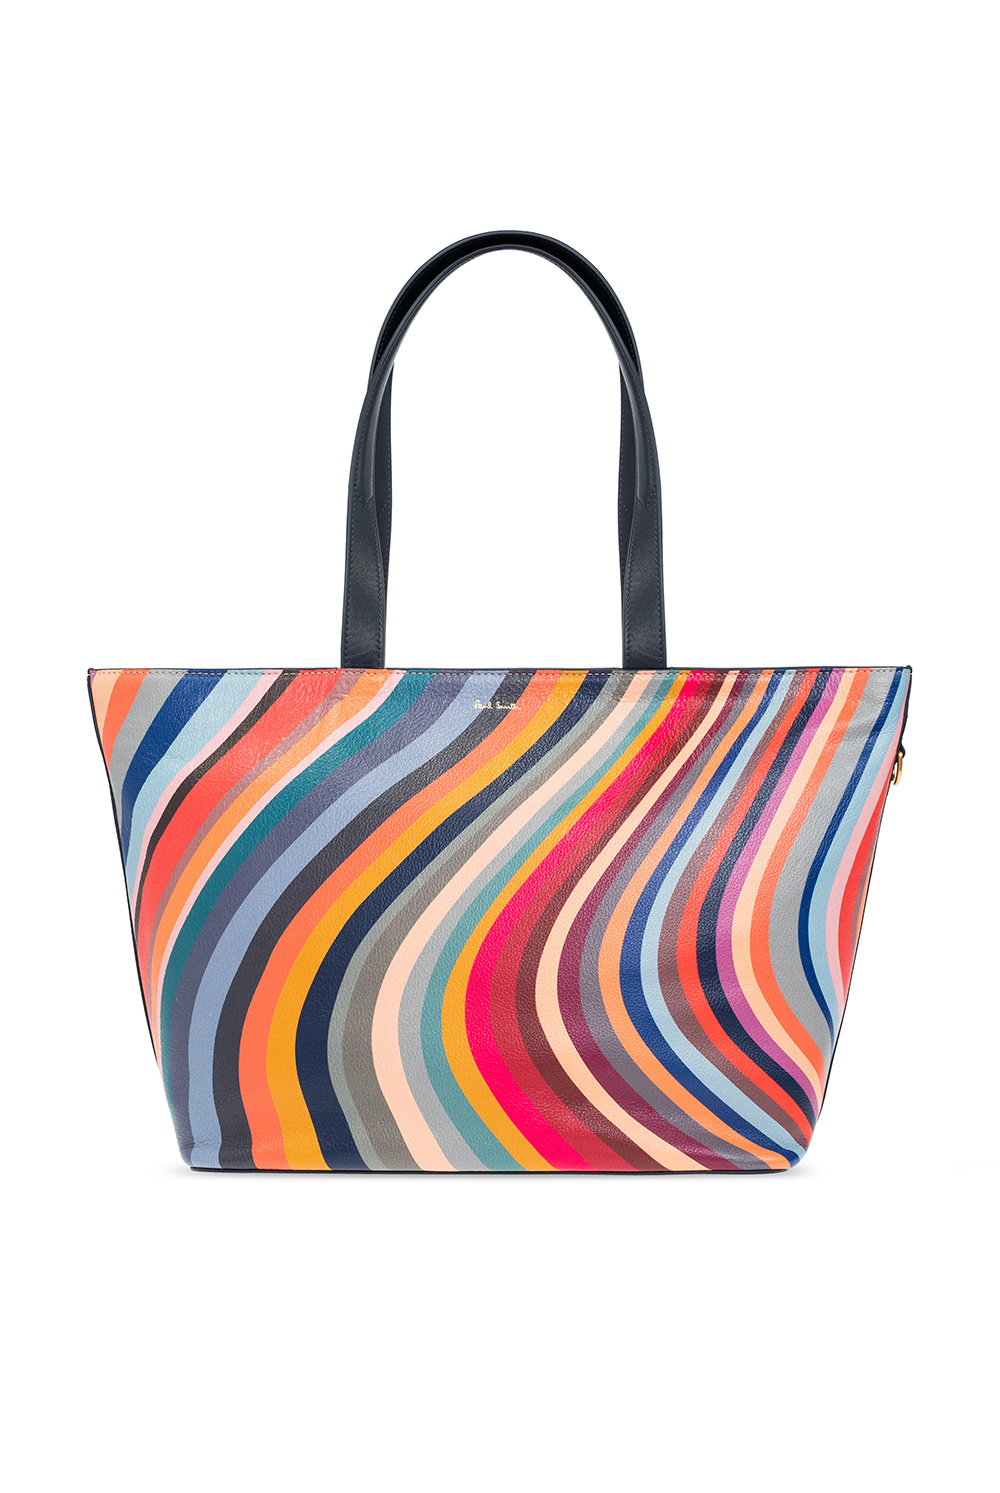 Paul Smith 'Swirl' shopper bag, Women's Bags, IetpShops